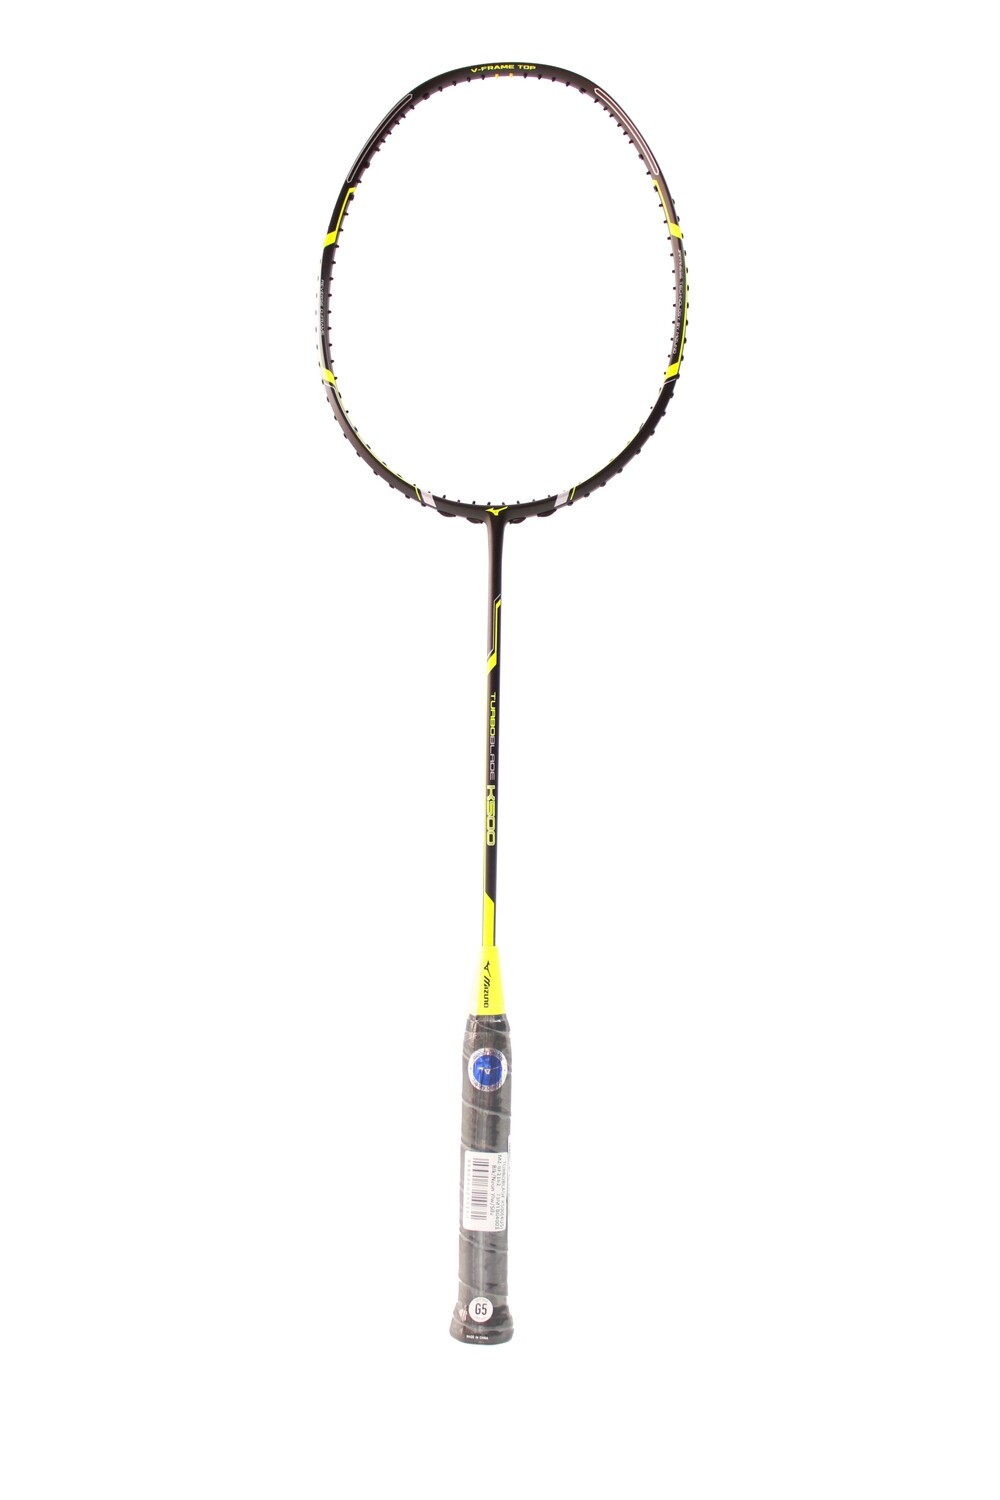 Mizuno TurboBlade K500 Badminton Racquet